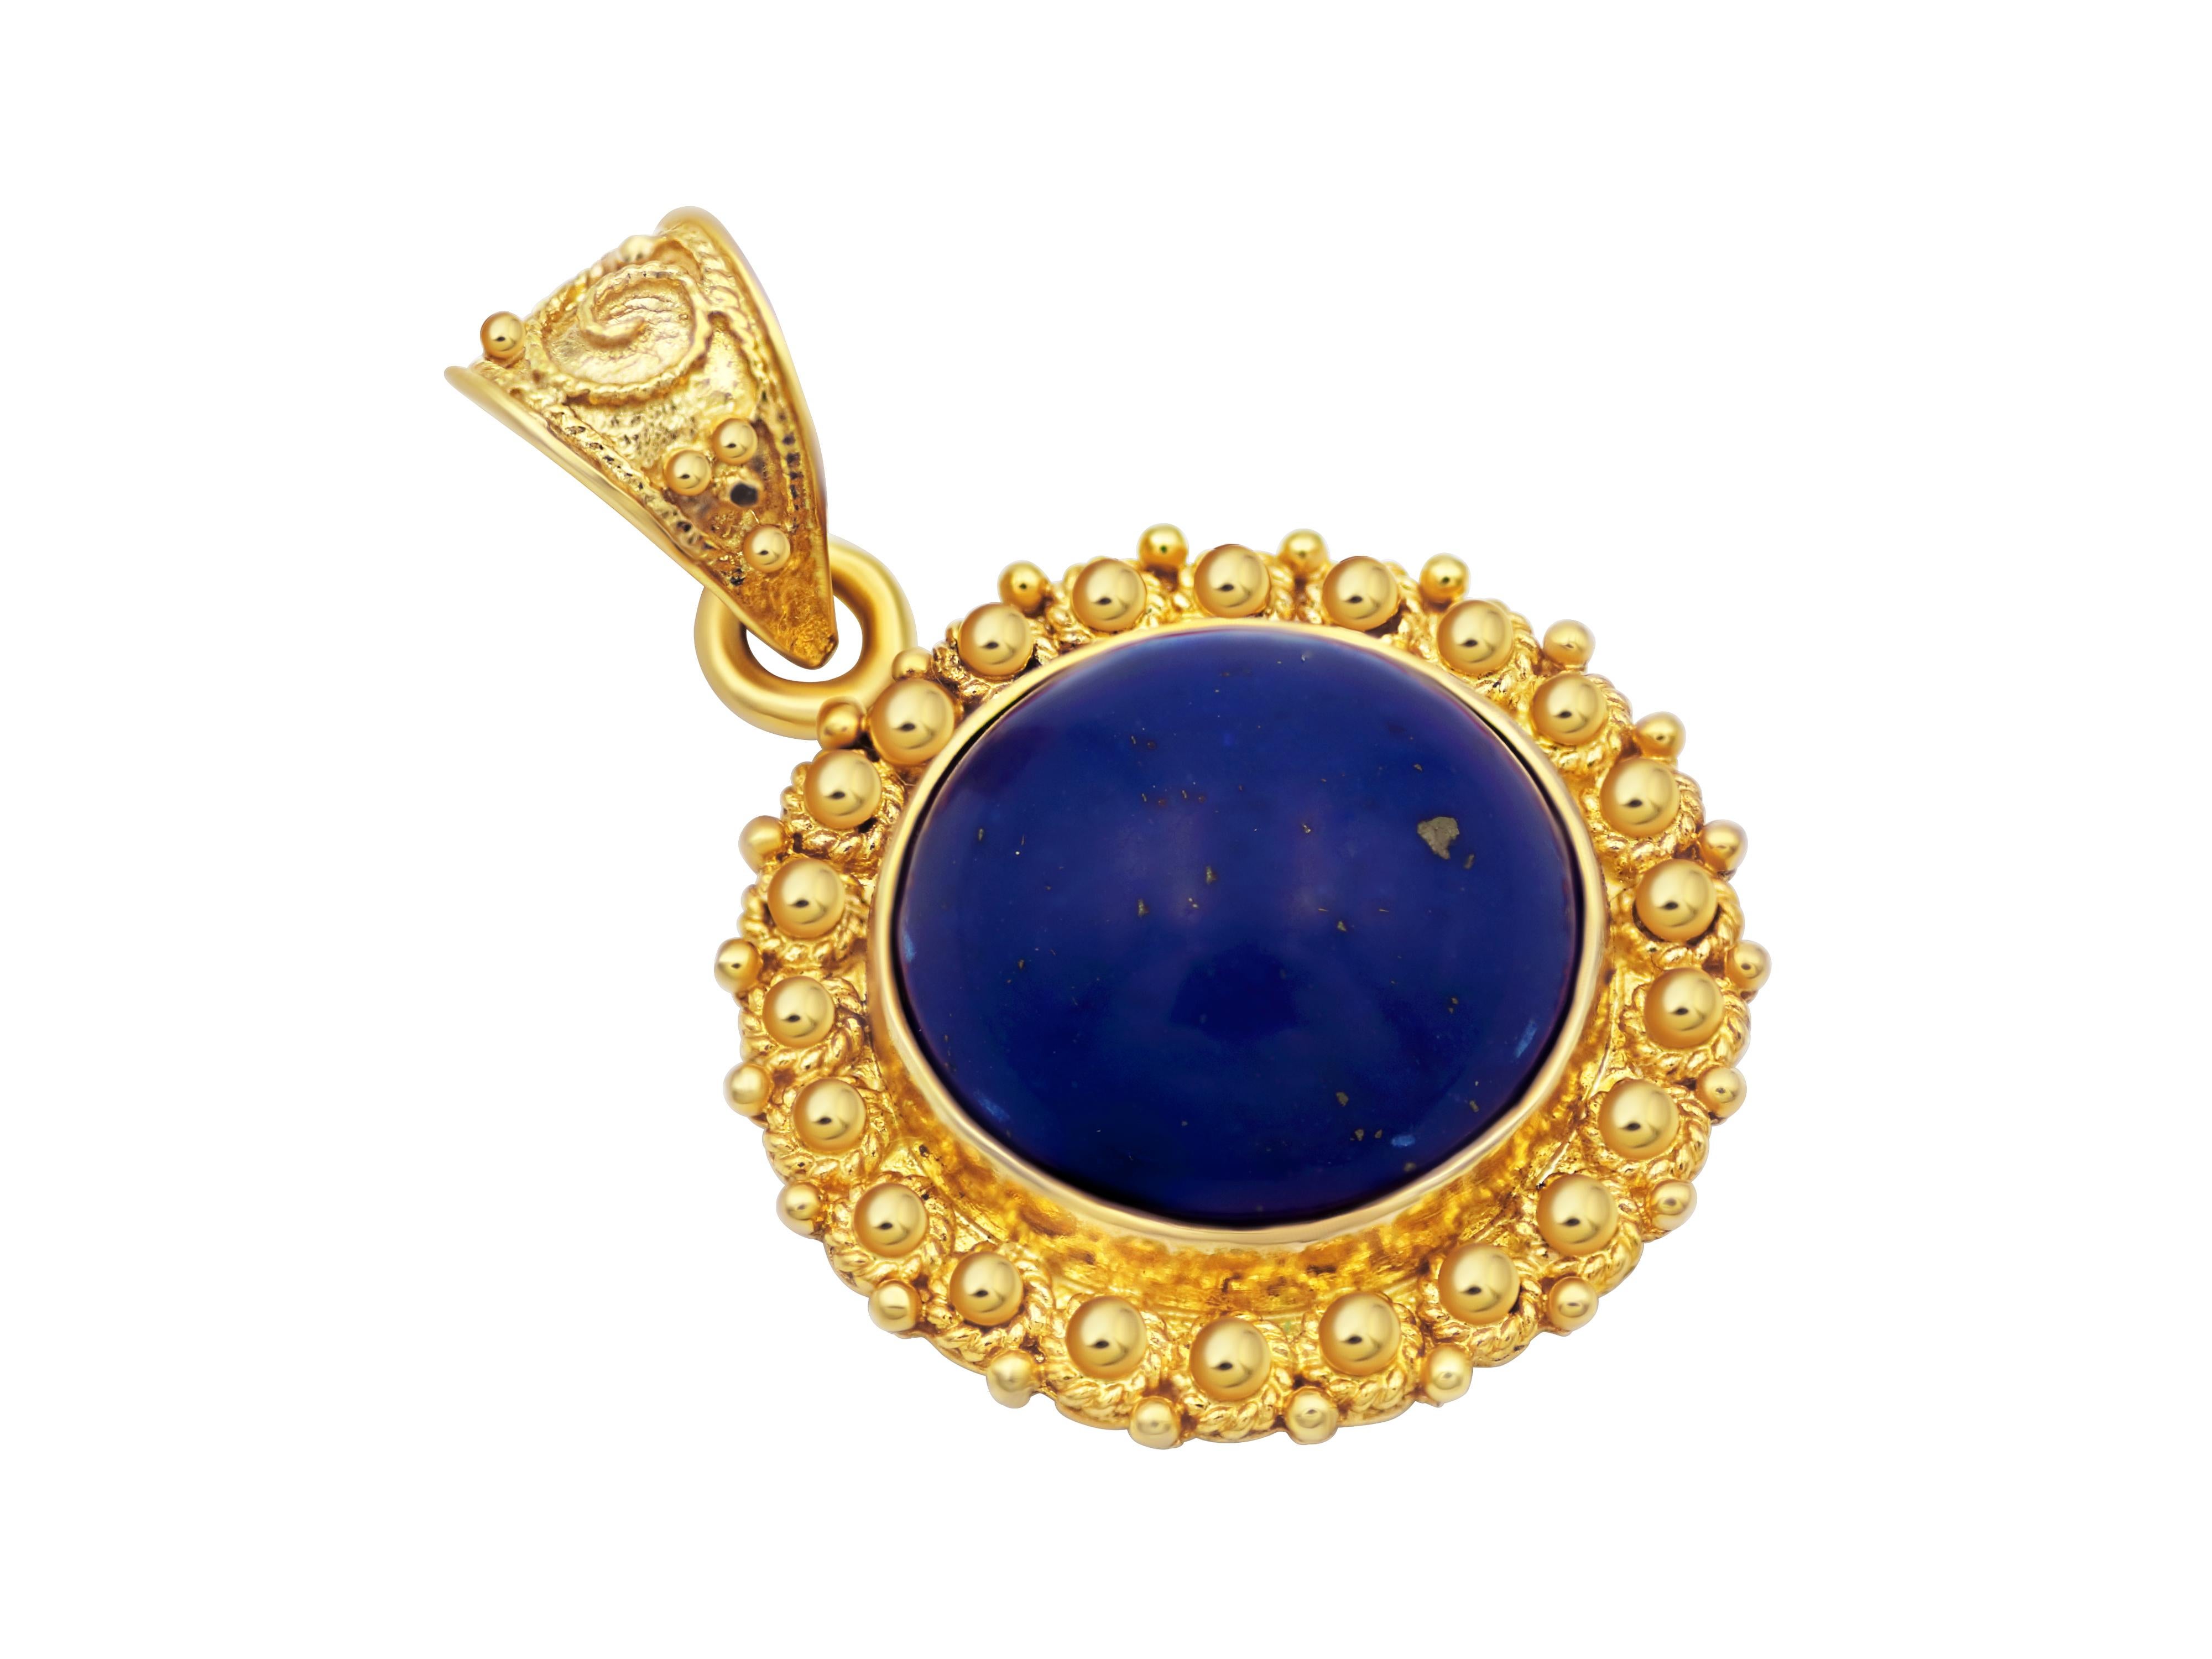 Pendentif avec Lapis Lazuli en or jaune 18k. Belle et artistiquement travaillée, sertie d'un cabochon de lapis naturel. Un bijou très quotidien et élégant.